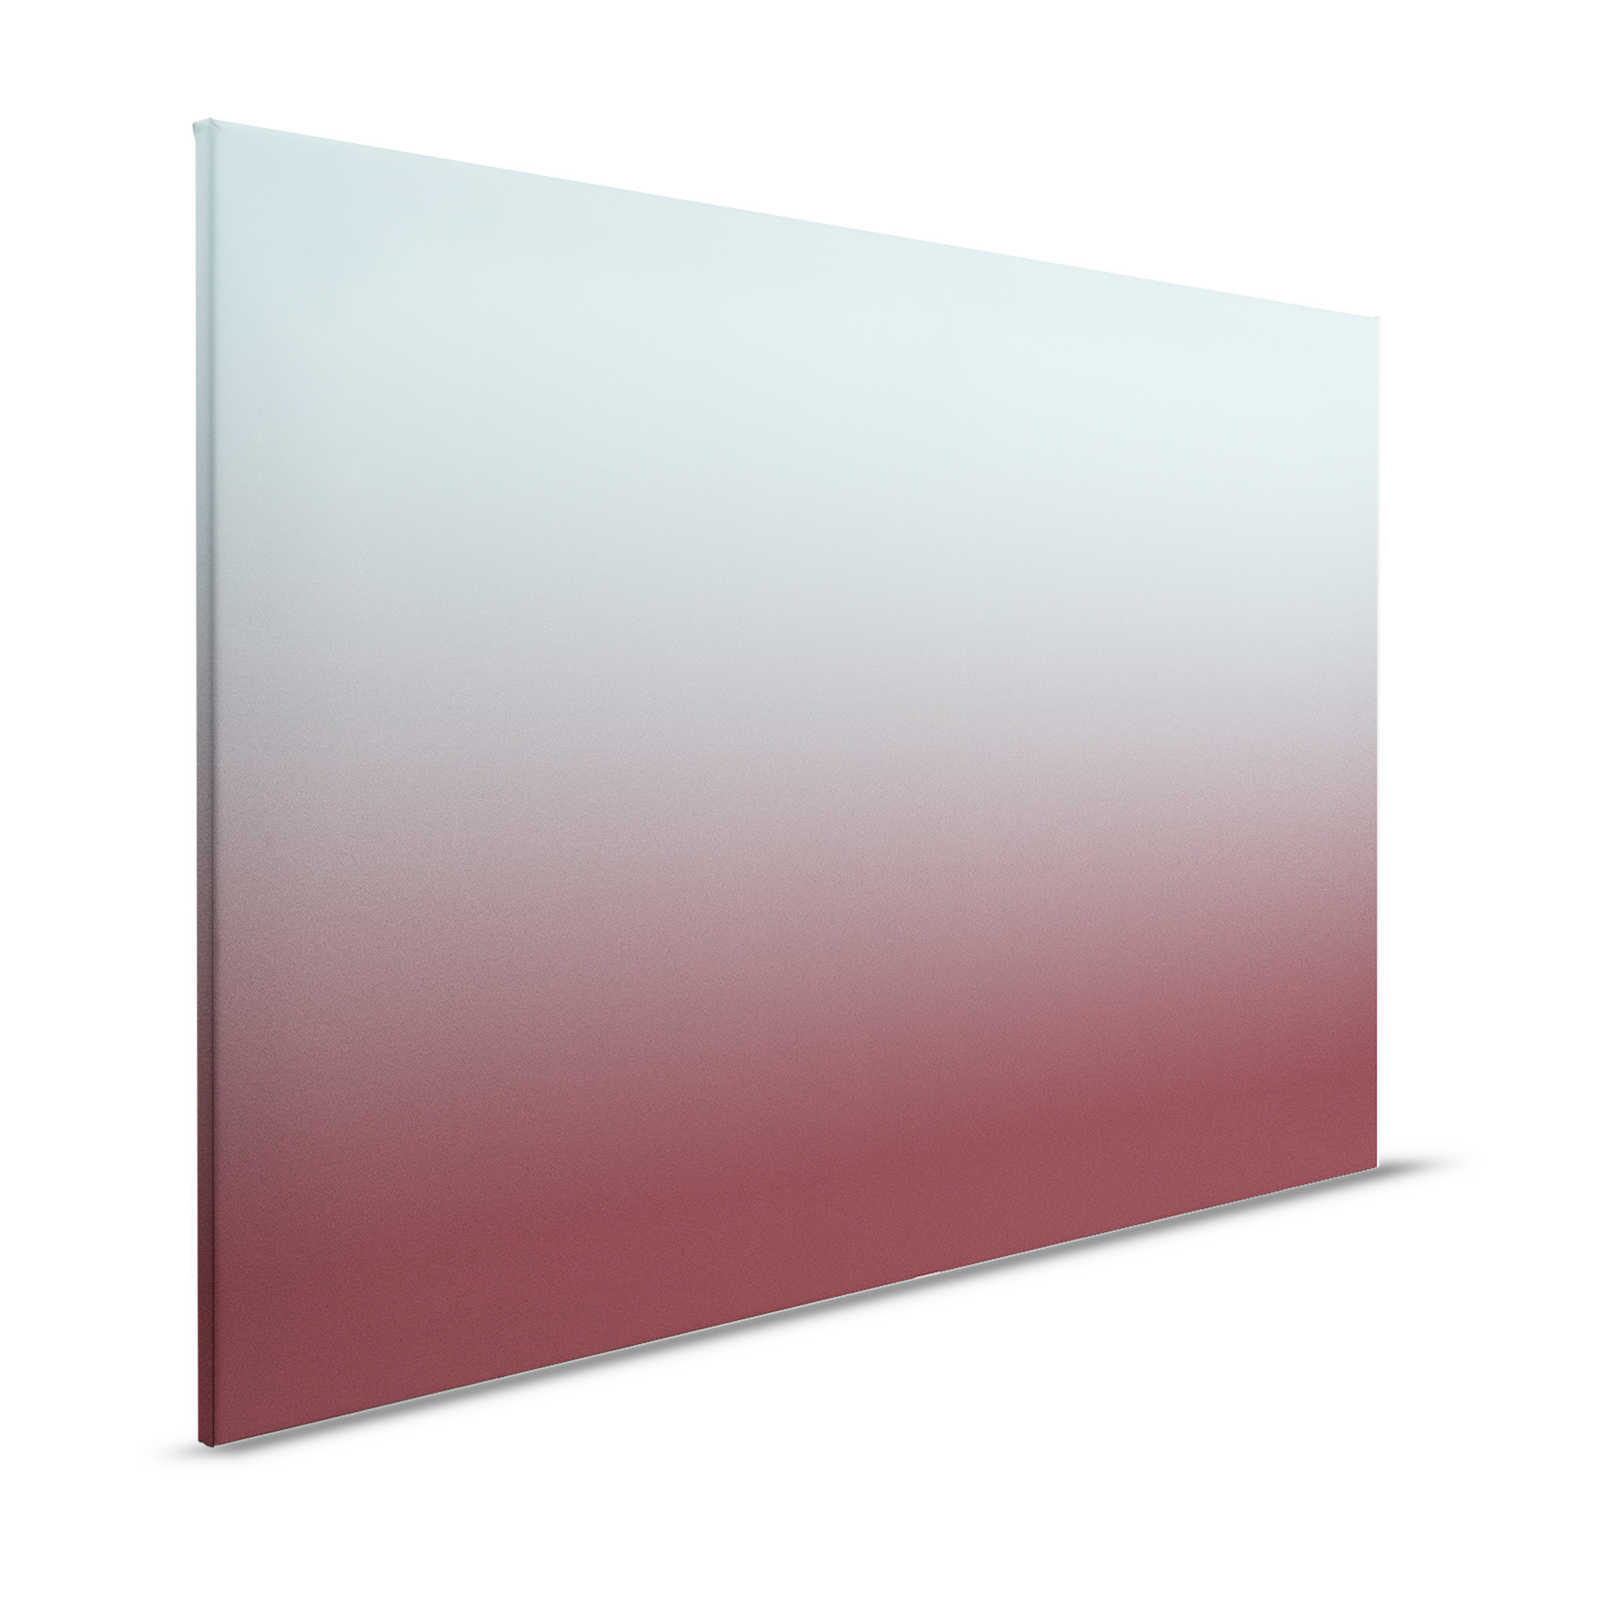 Colour Studio 3 - Ombre toile bleu clair & rouge vin avec dégradé - 1,20 m x 0,80 m
